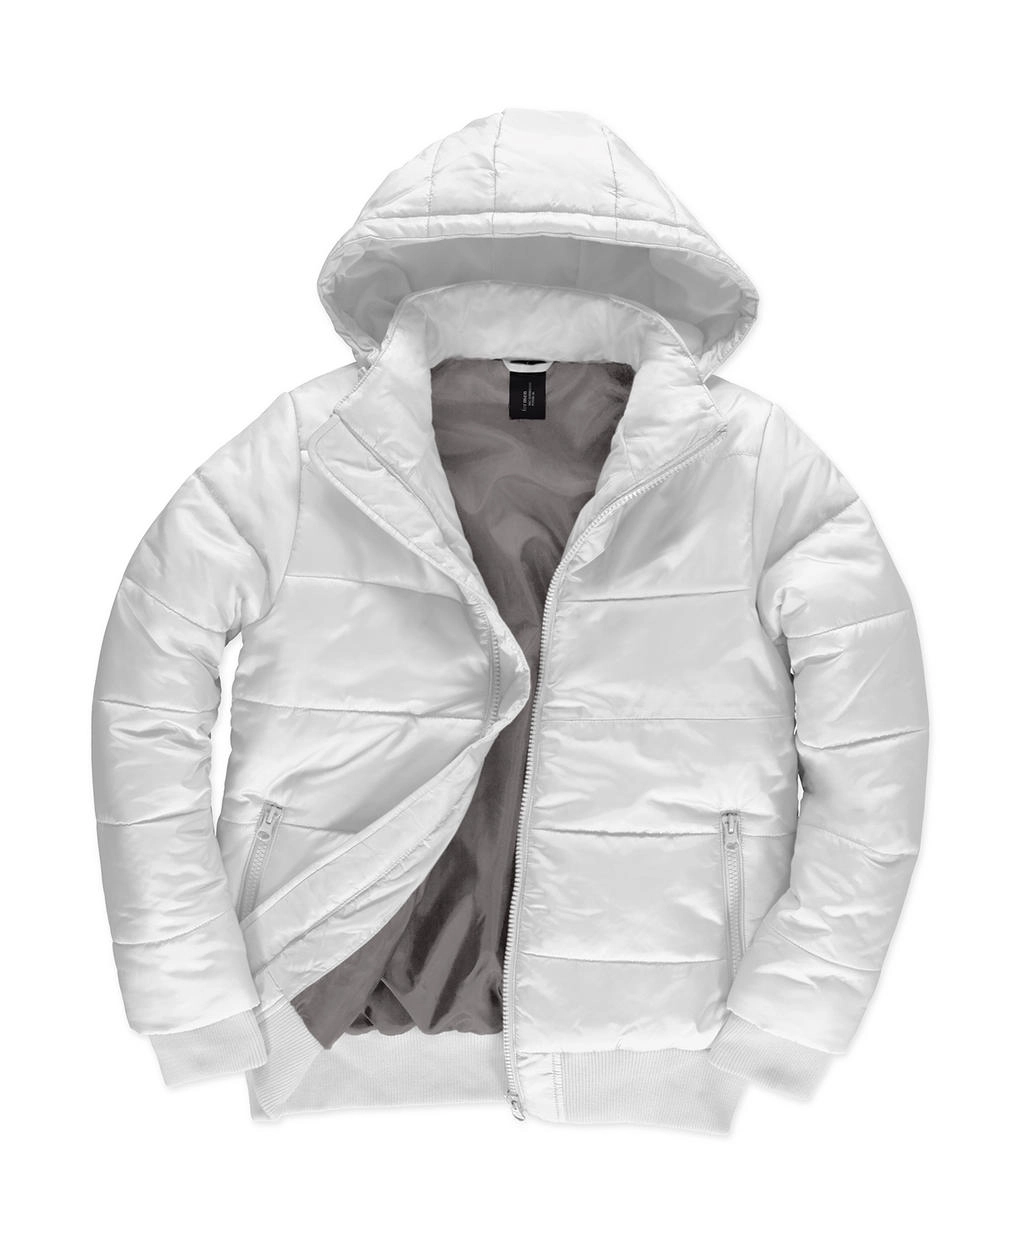 Superhood/men Jacket zum Besticken und Bedrucken in der Farbe White/Warm Grey mit Ihren Logo, Schriftzug oder Motiv.